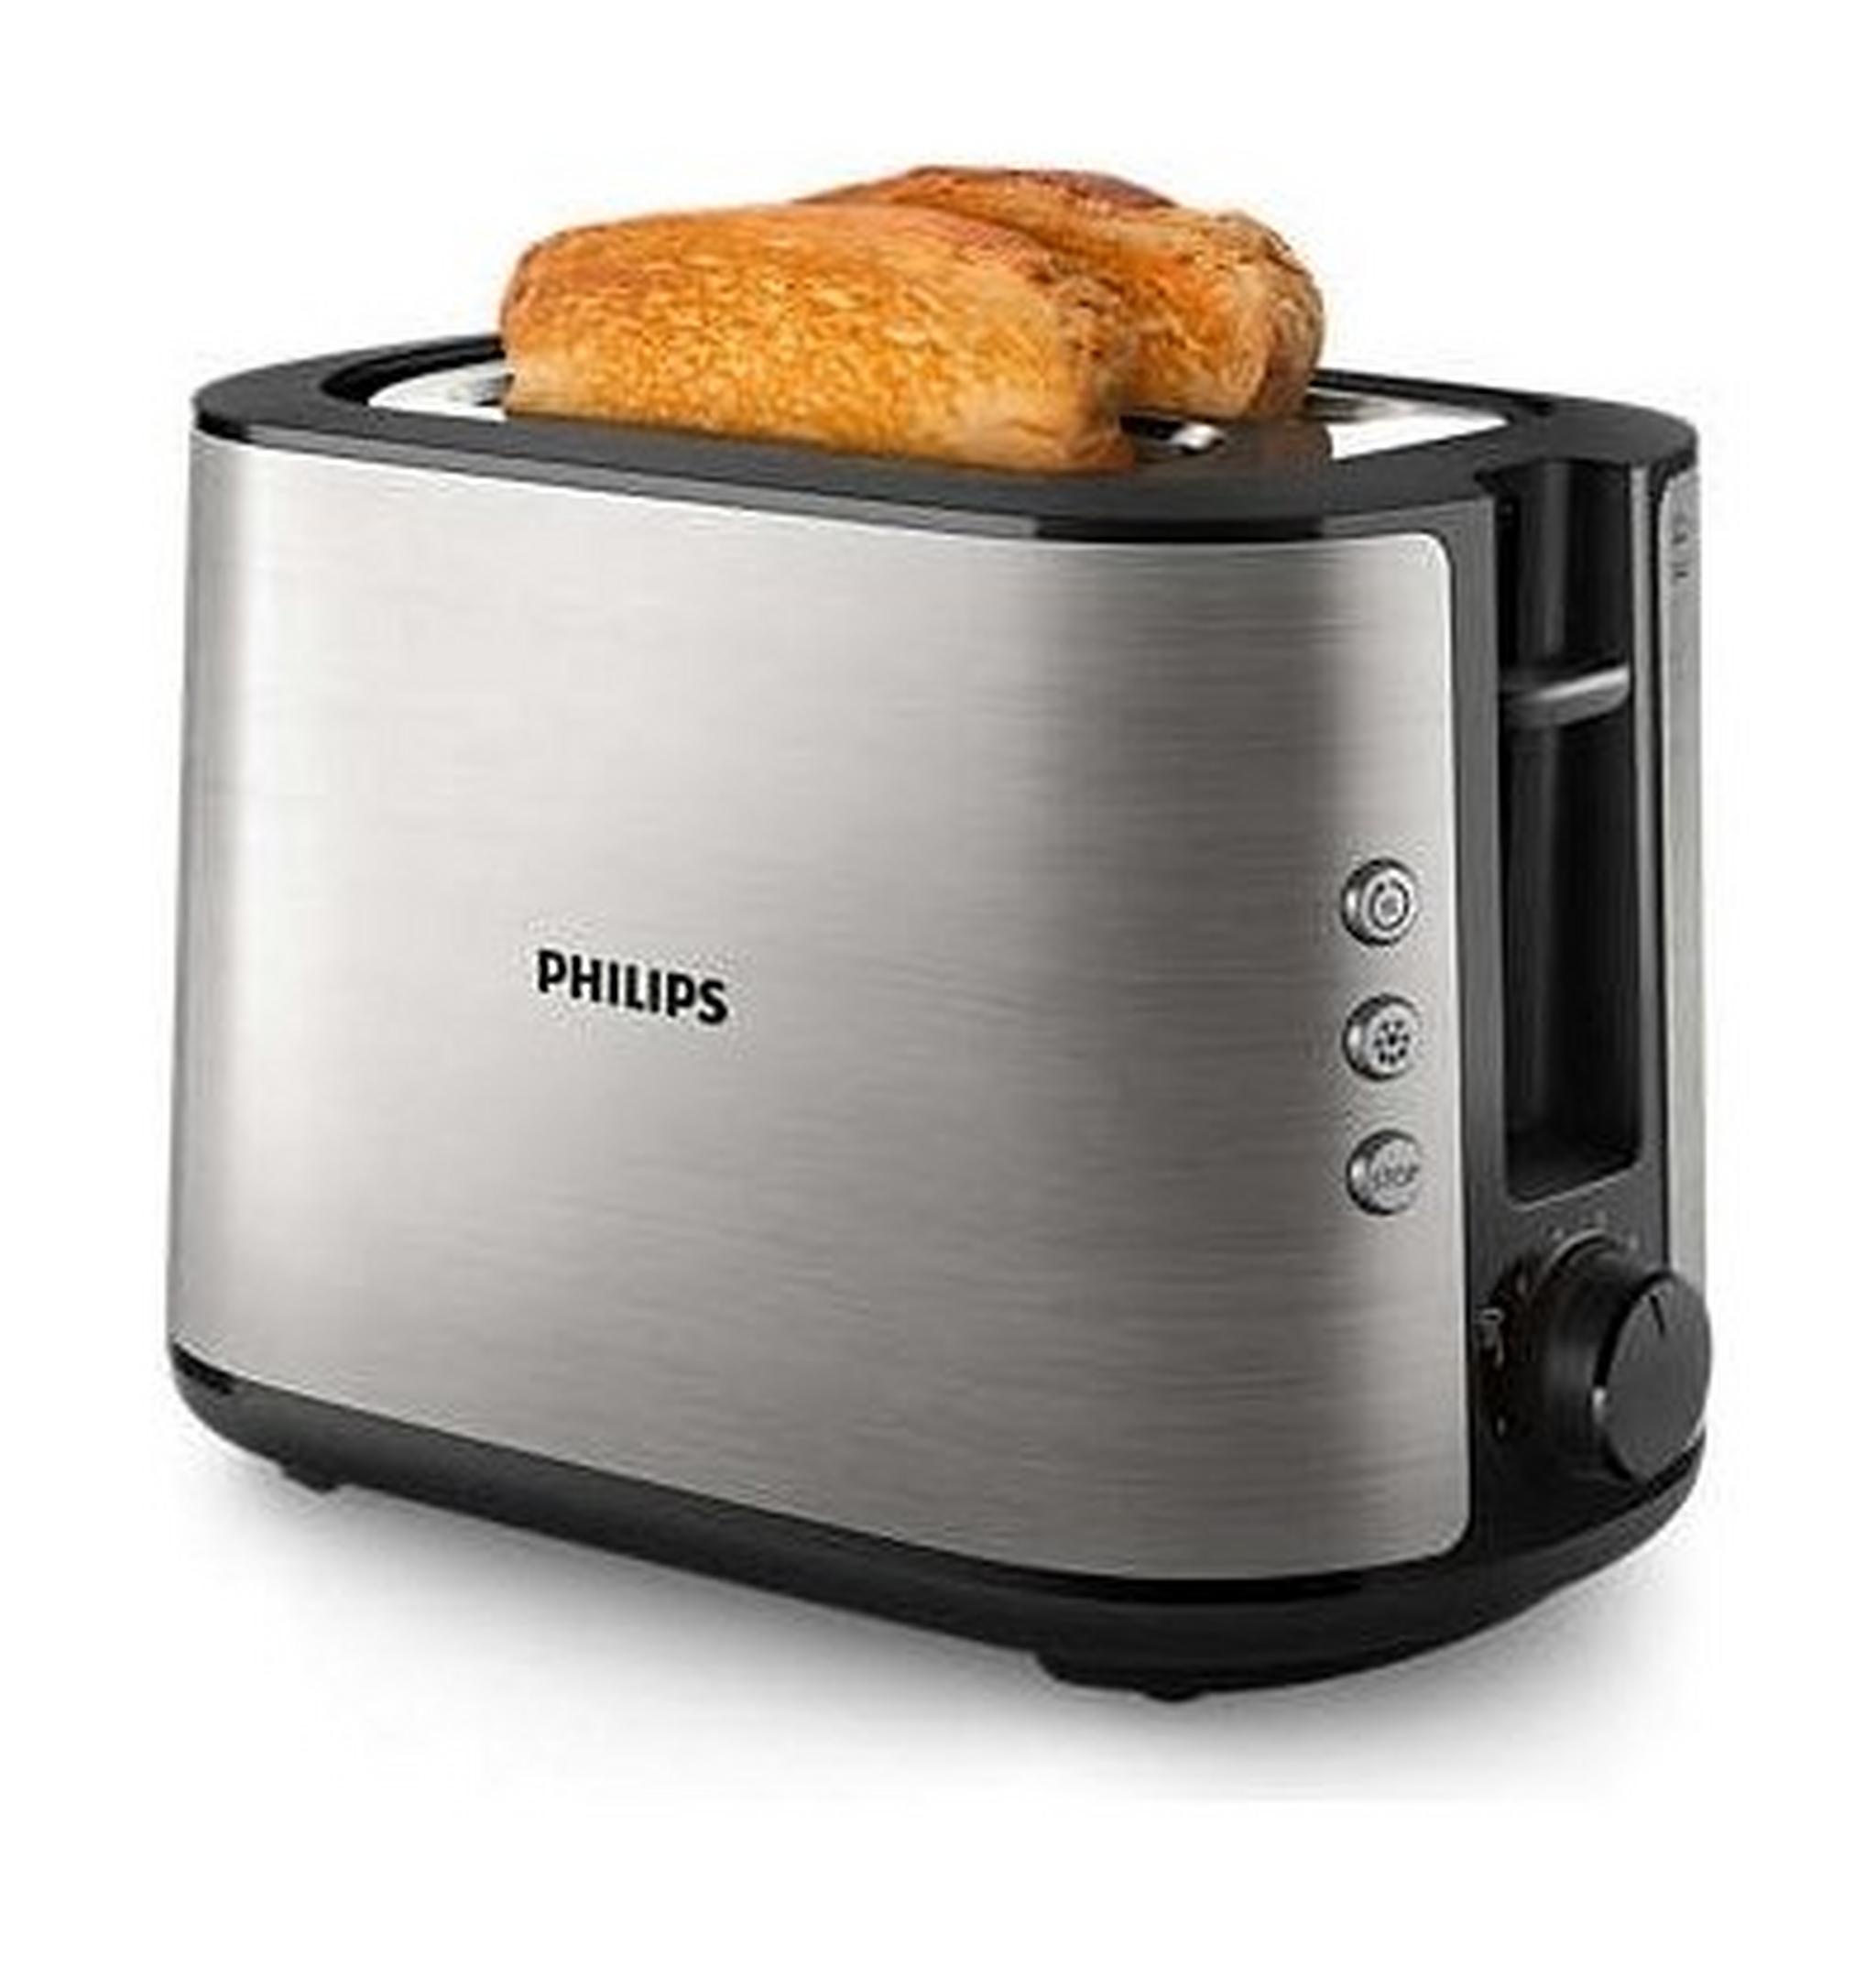 محمصة الخبز فيليبس من مجموعة فيفا معدني بالكامل، 950 واط، HD2650/92 - فضي/أسود